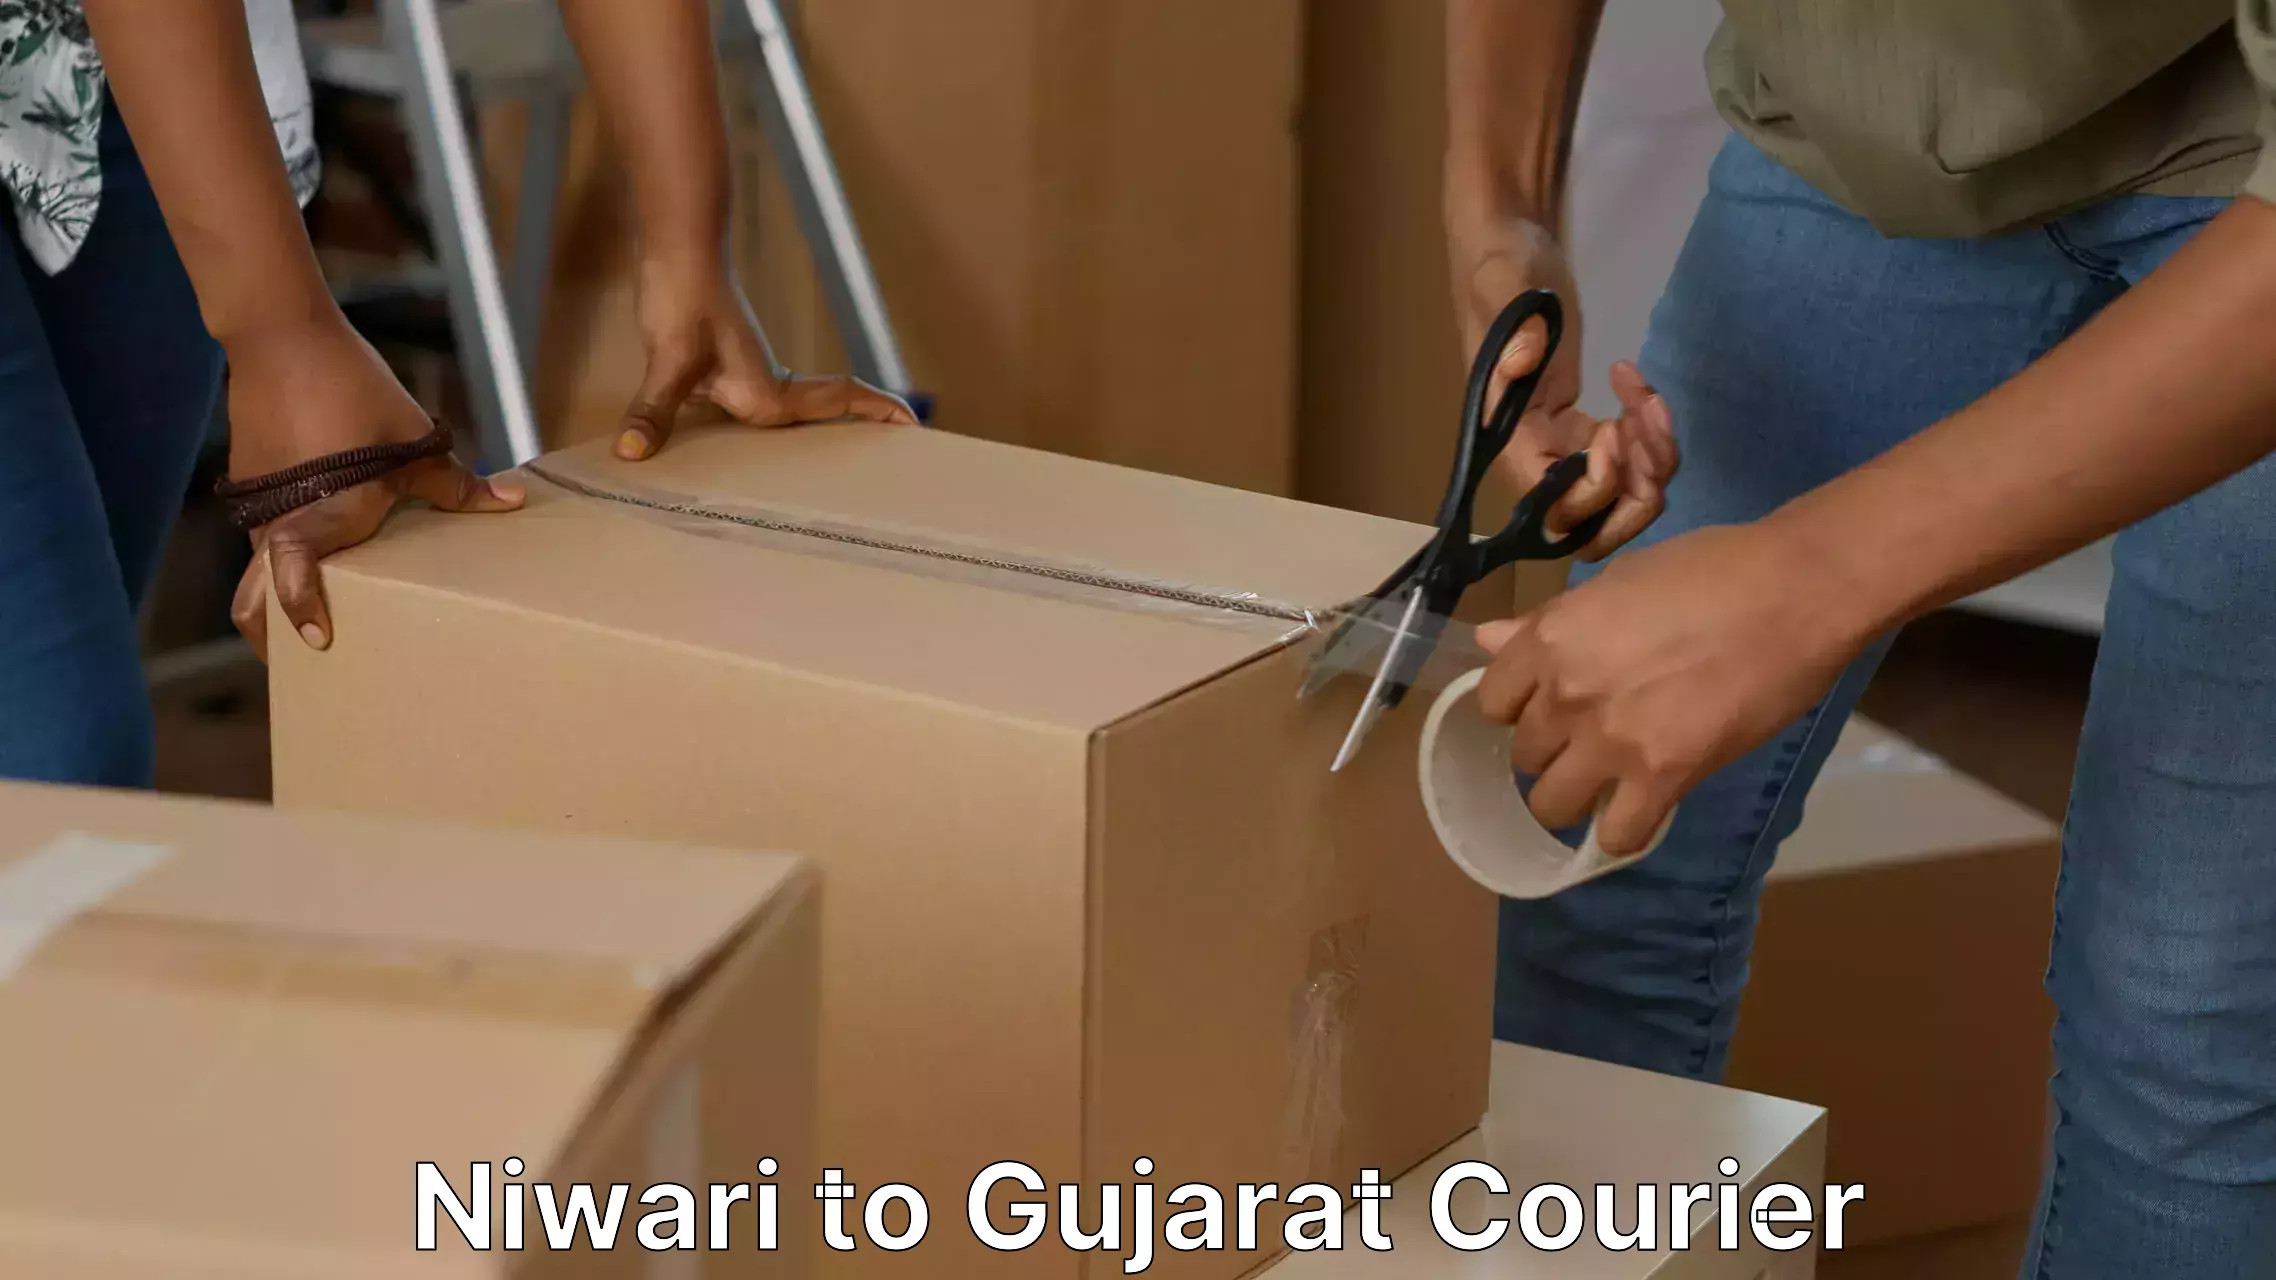 Skilled furniture movers Niwari to Gujarat